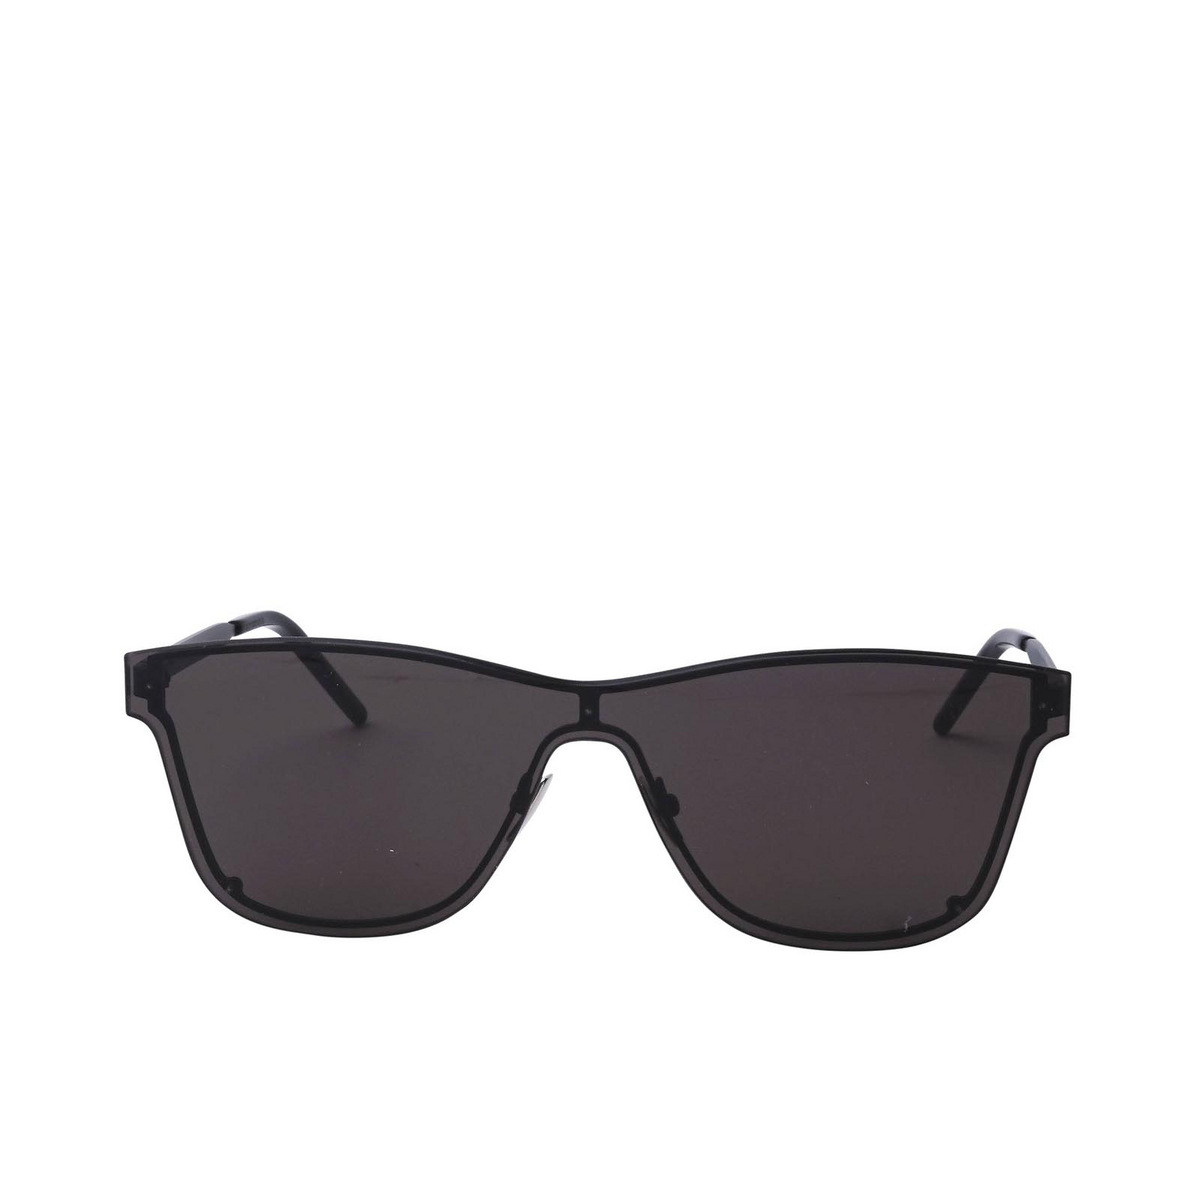 Saint Laurent® Mask Sunglasses: SL 51 MASK color Black 001 - front view.